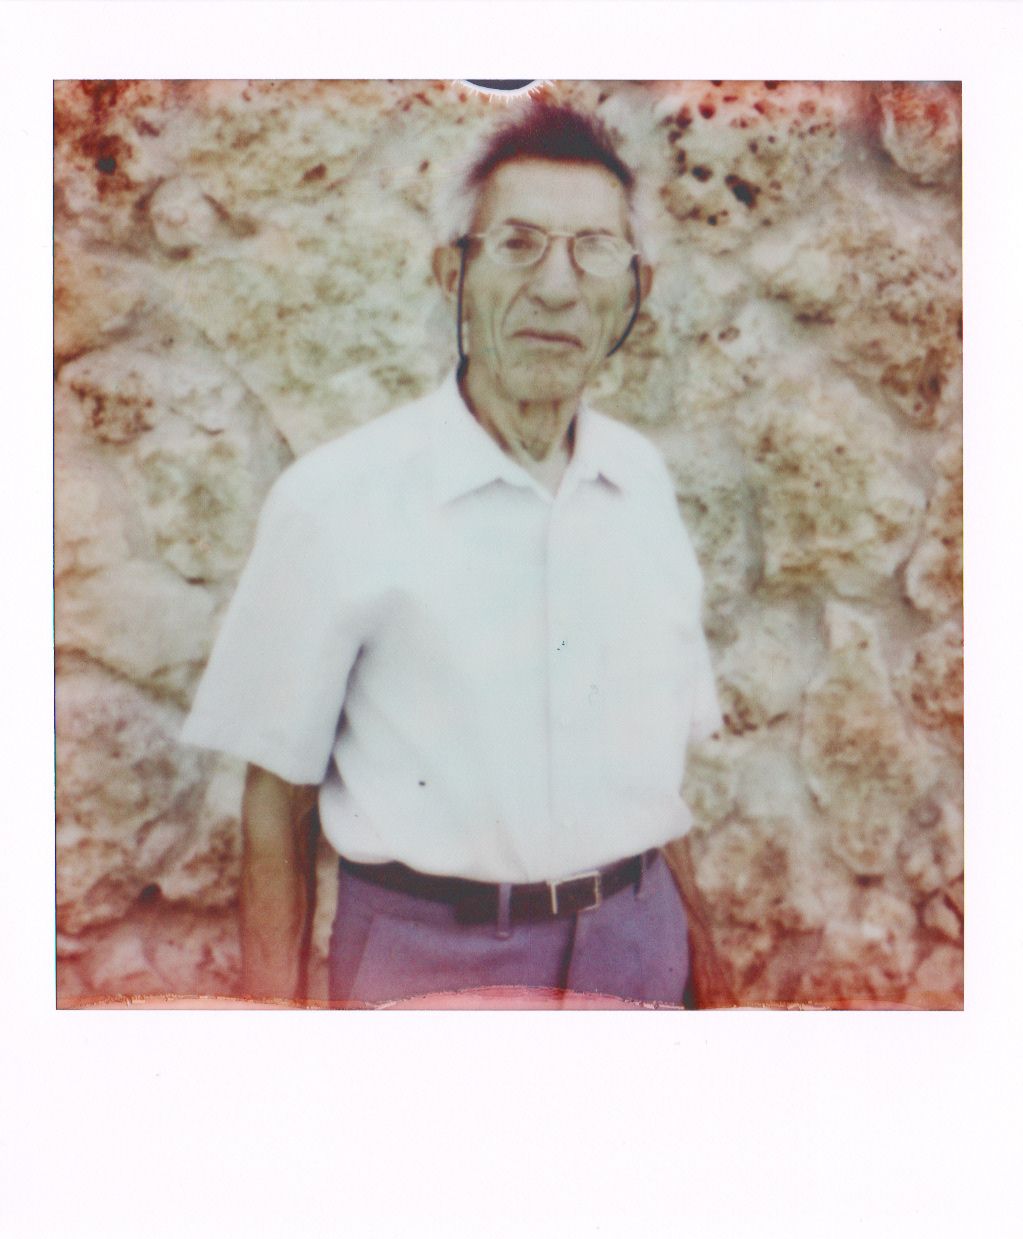 POLAROID impossible project instan film portraits retratos Ivan Moreno Perez